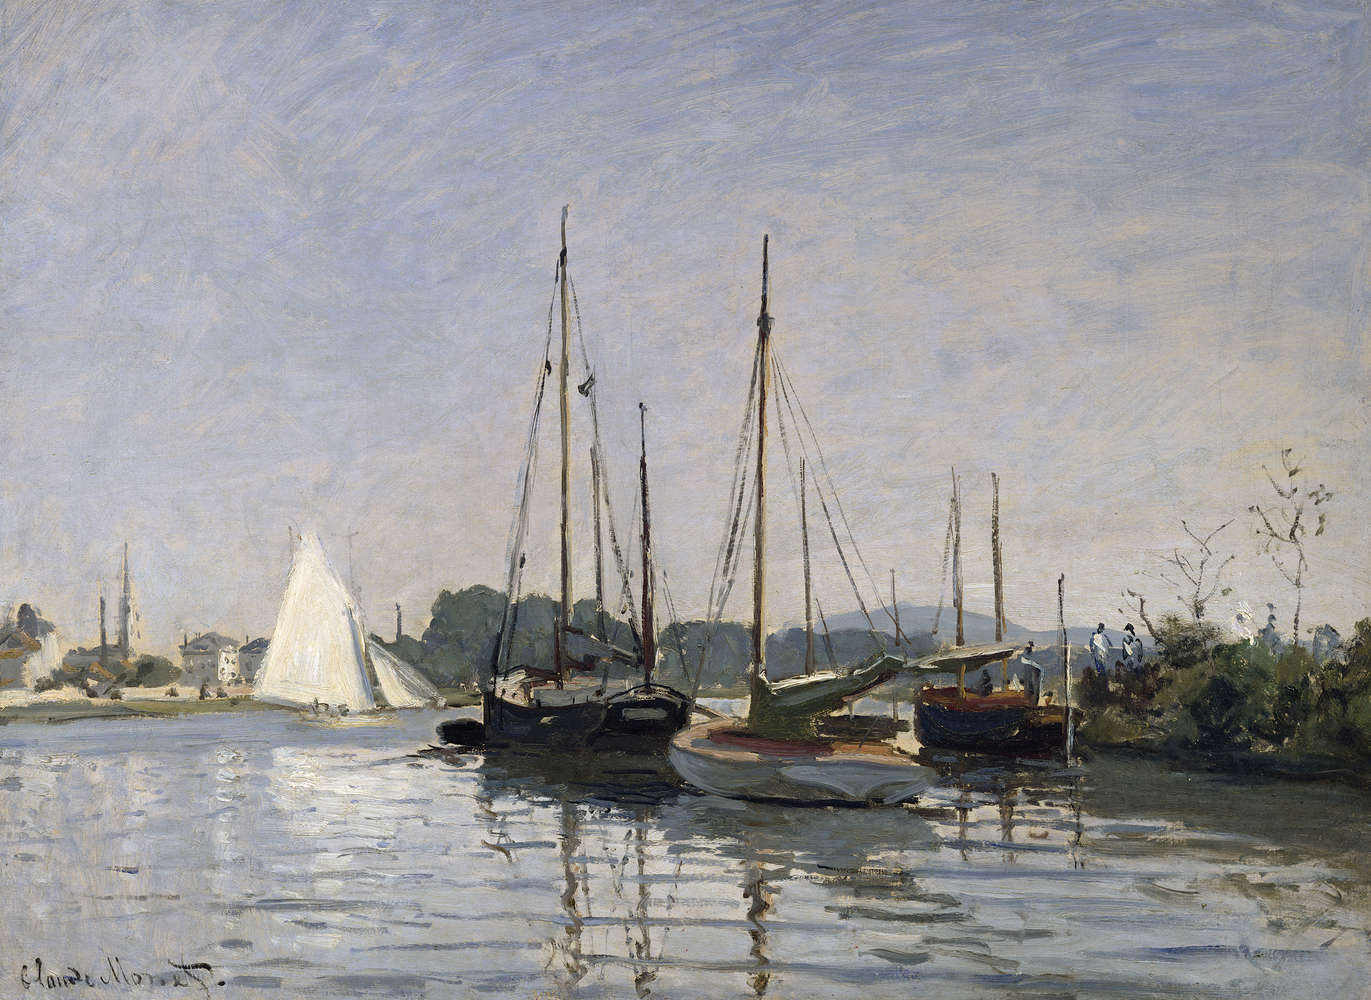             Mural "Pleasure boats, Argenteuil" by Claude Monet
        